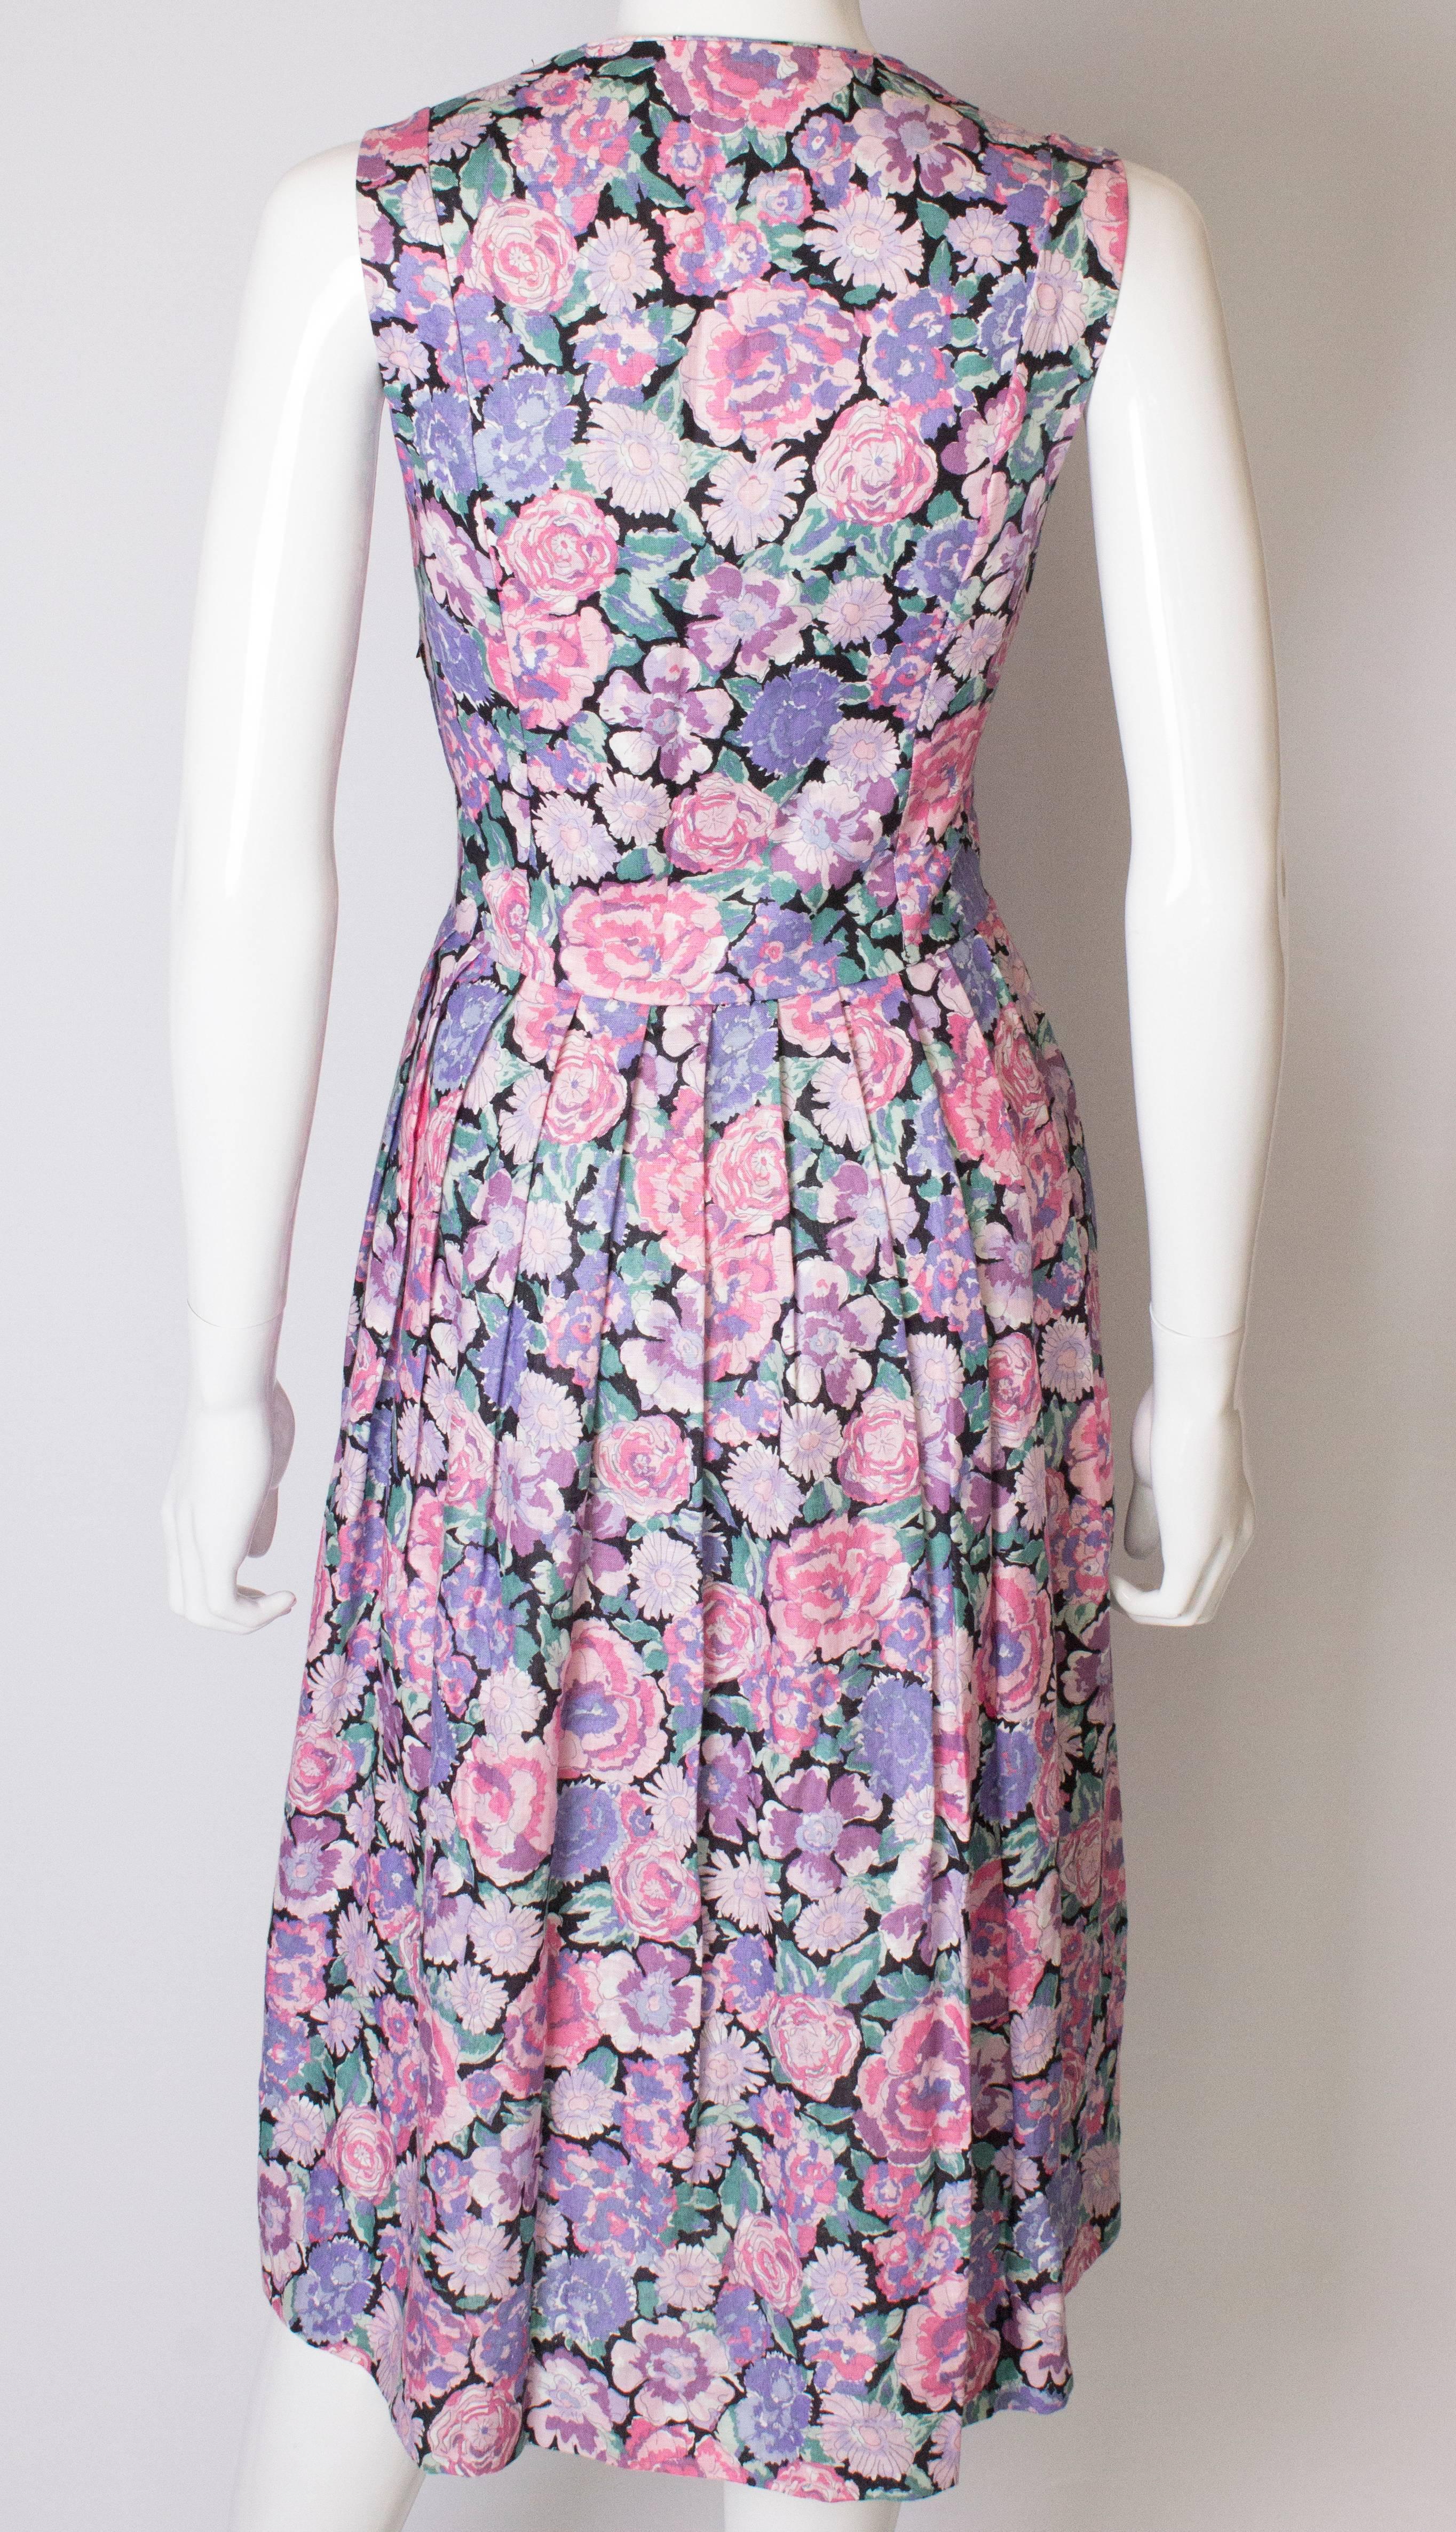 Vintage Laura Ashley Floral Cotton / Linen Dress 1